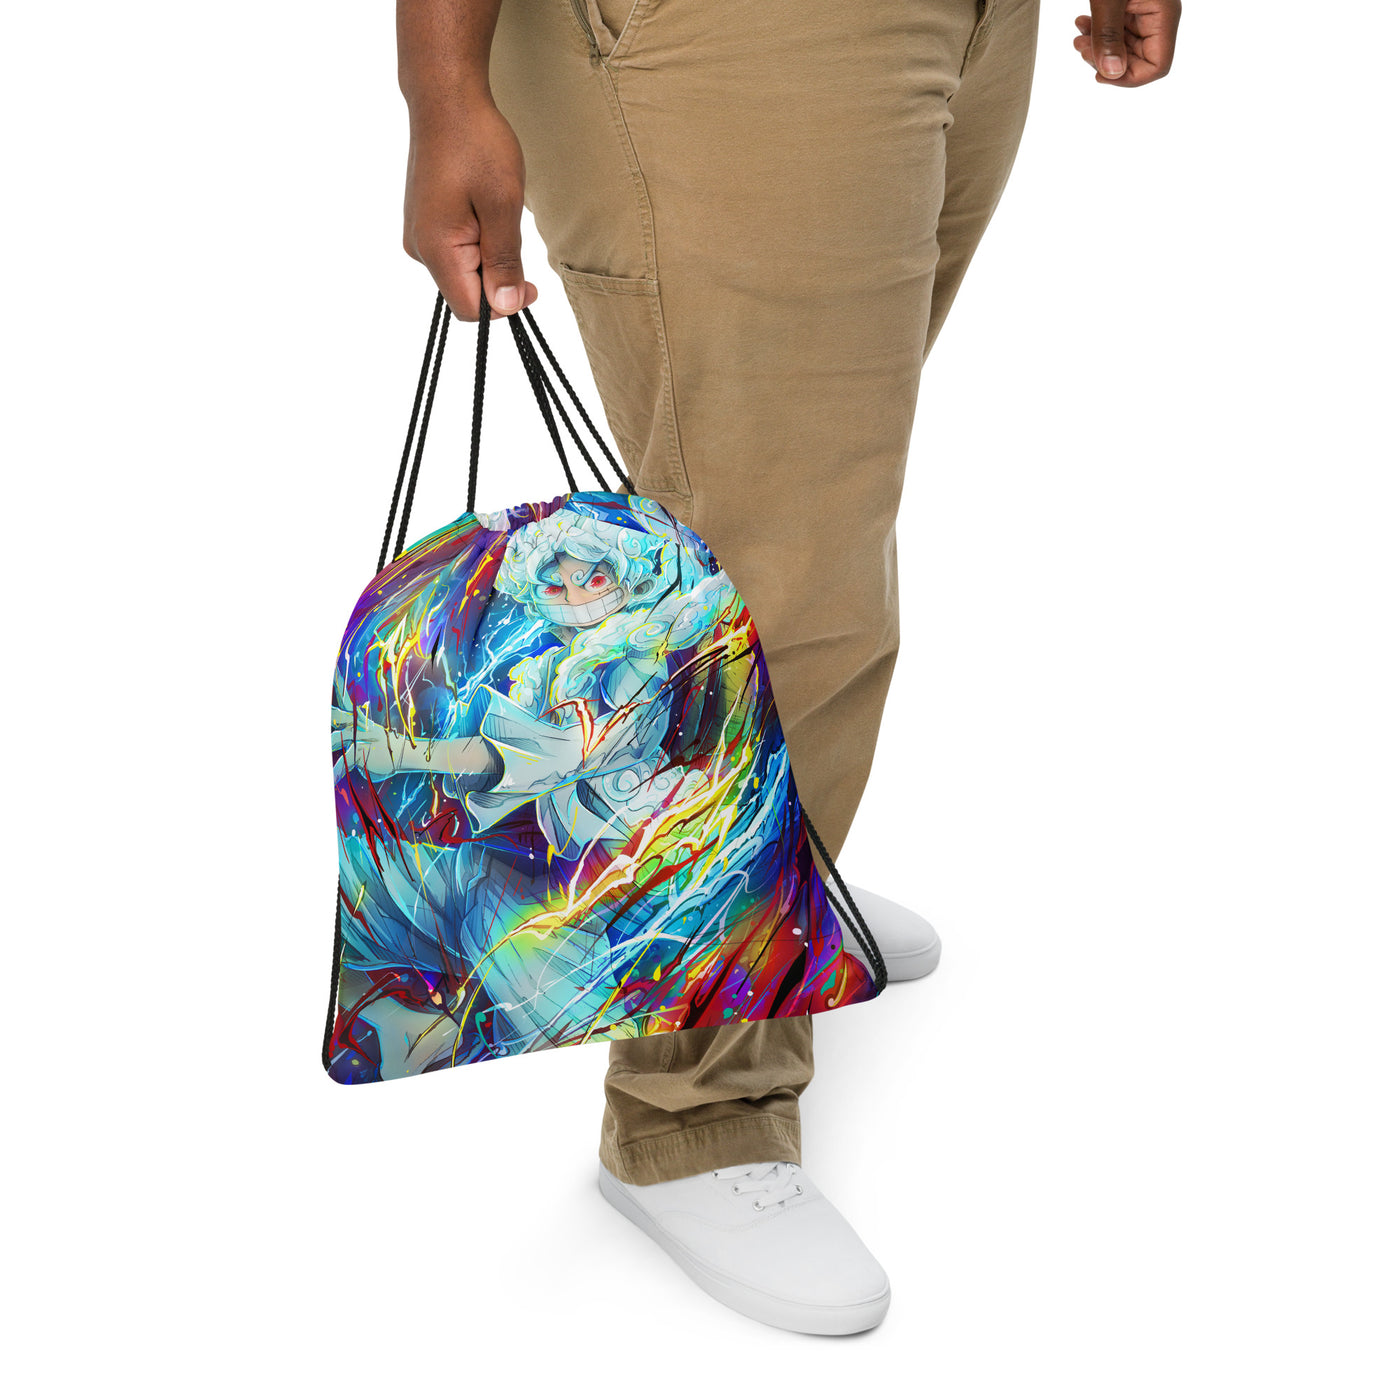 Gear Fifth Luffy Drawstring bag